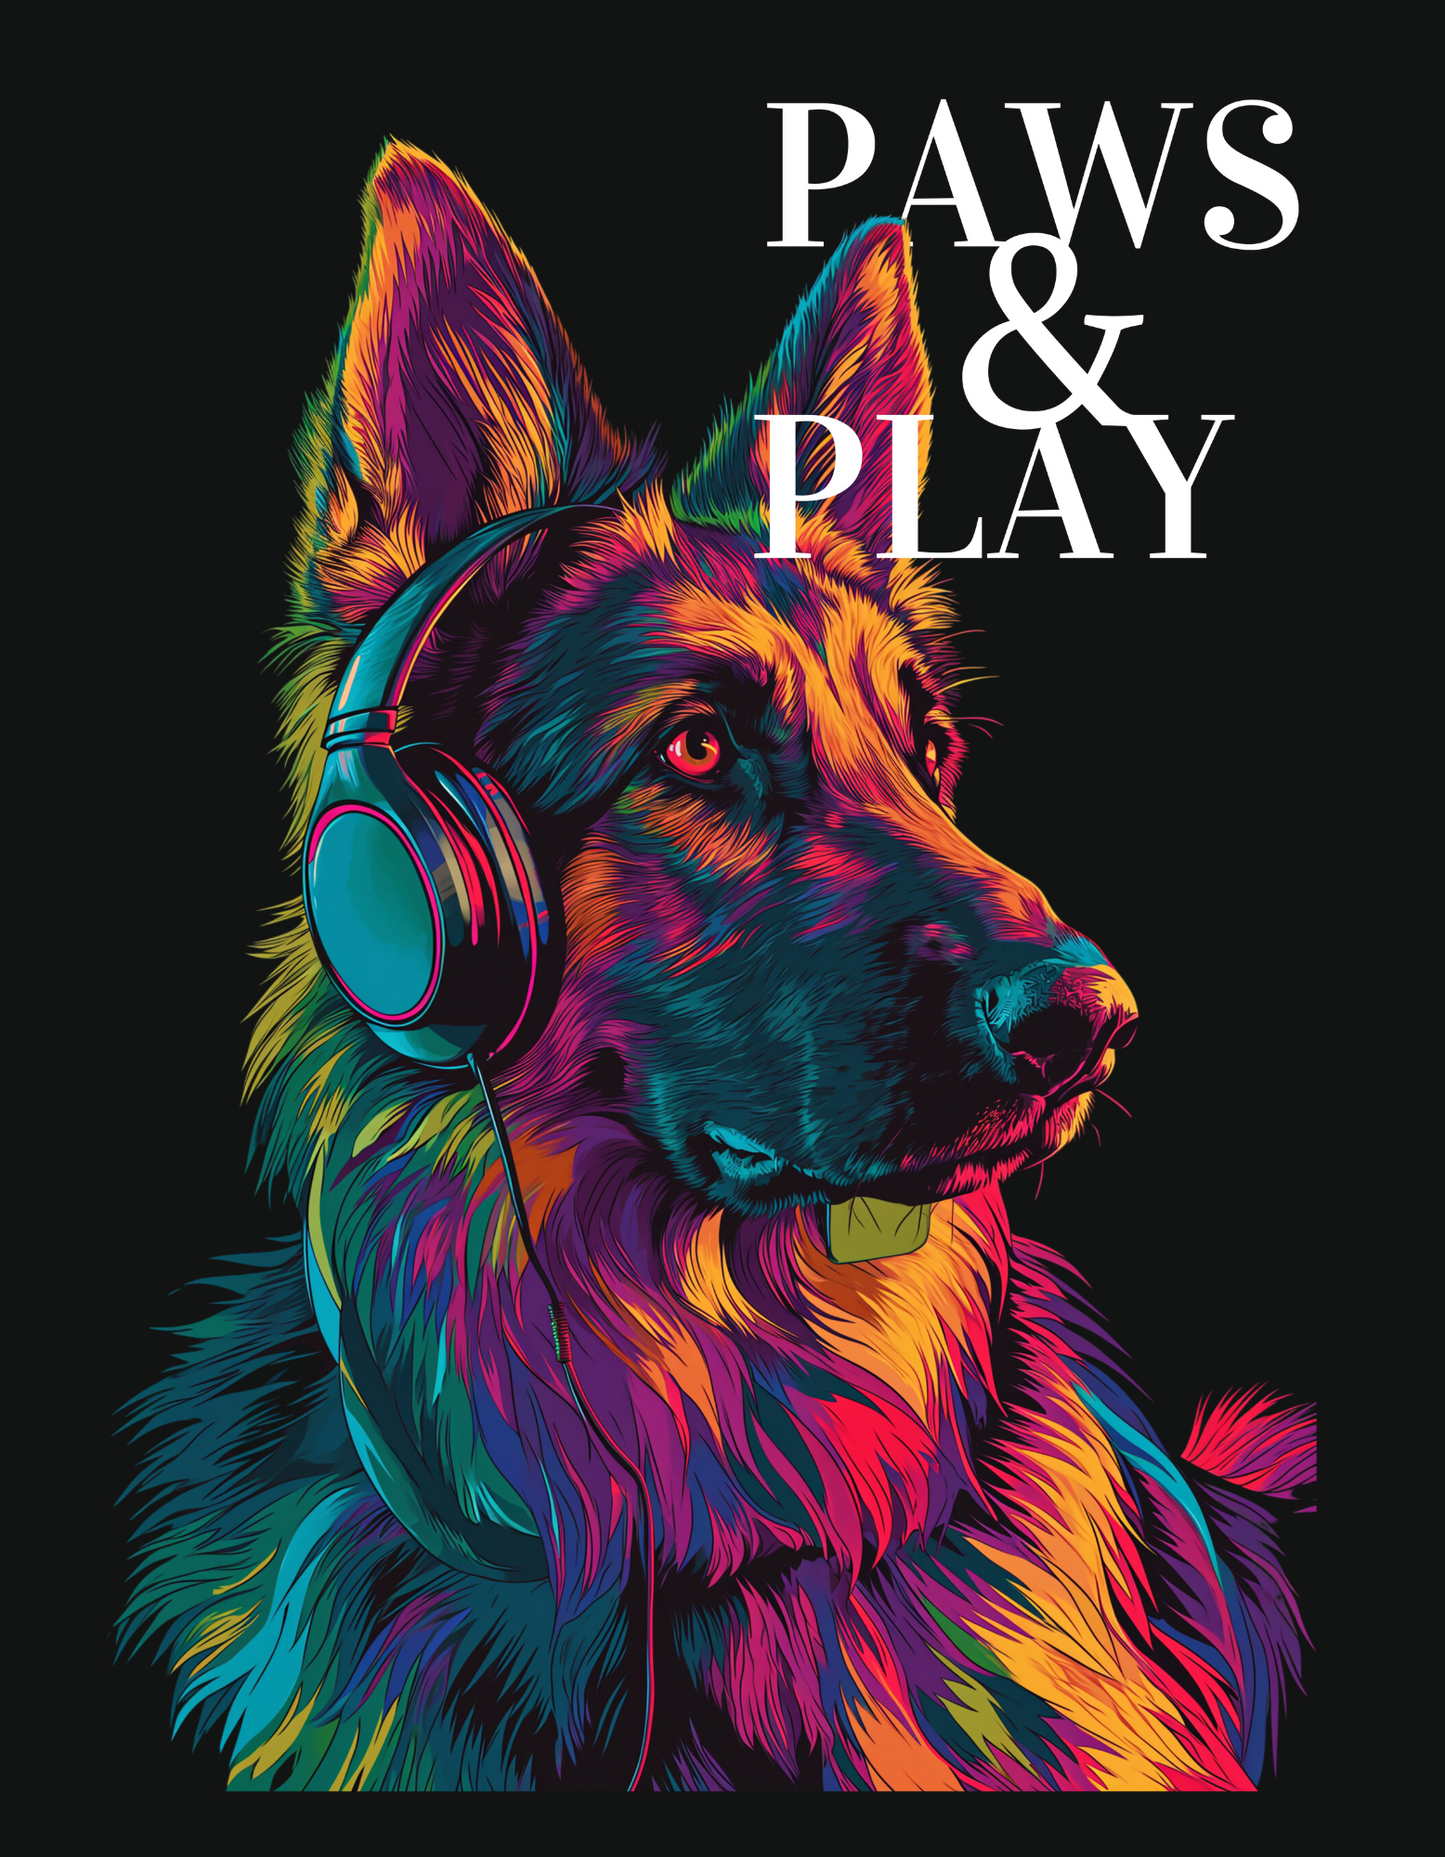 Paws & Play print T-shirt